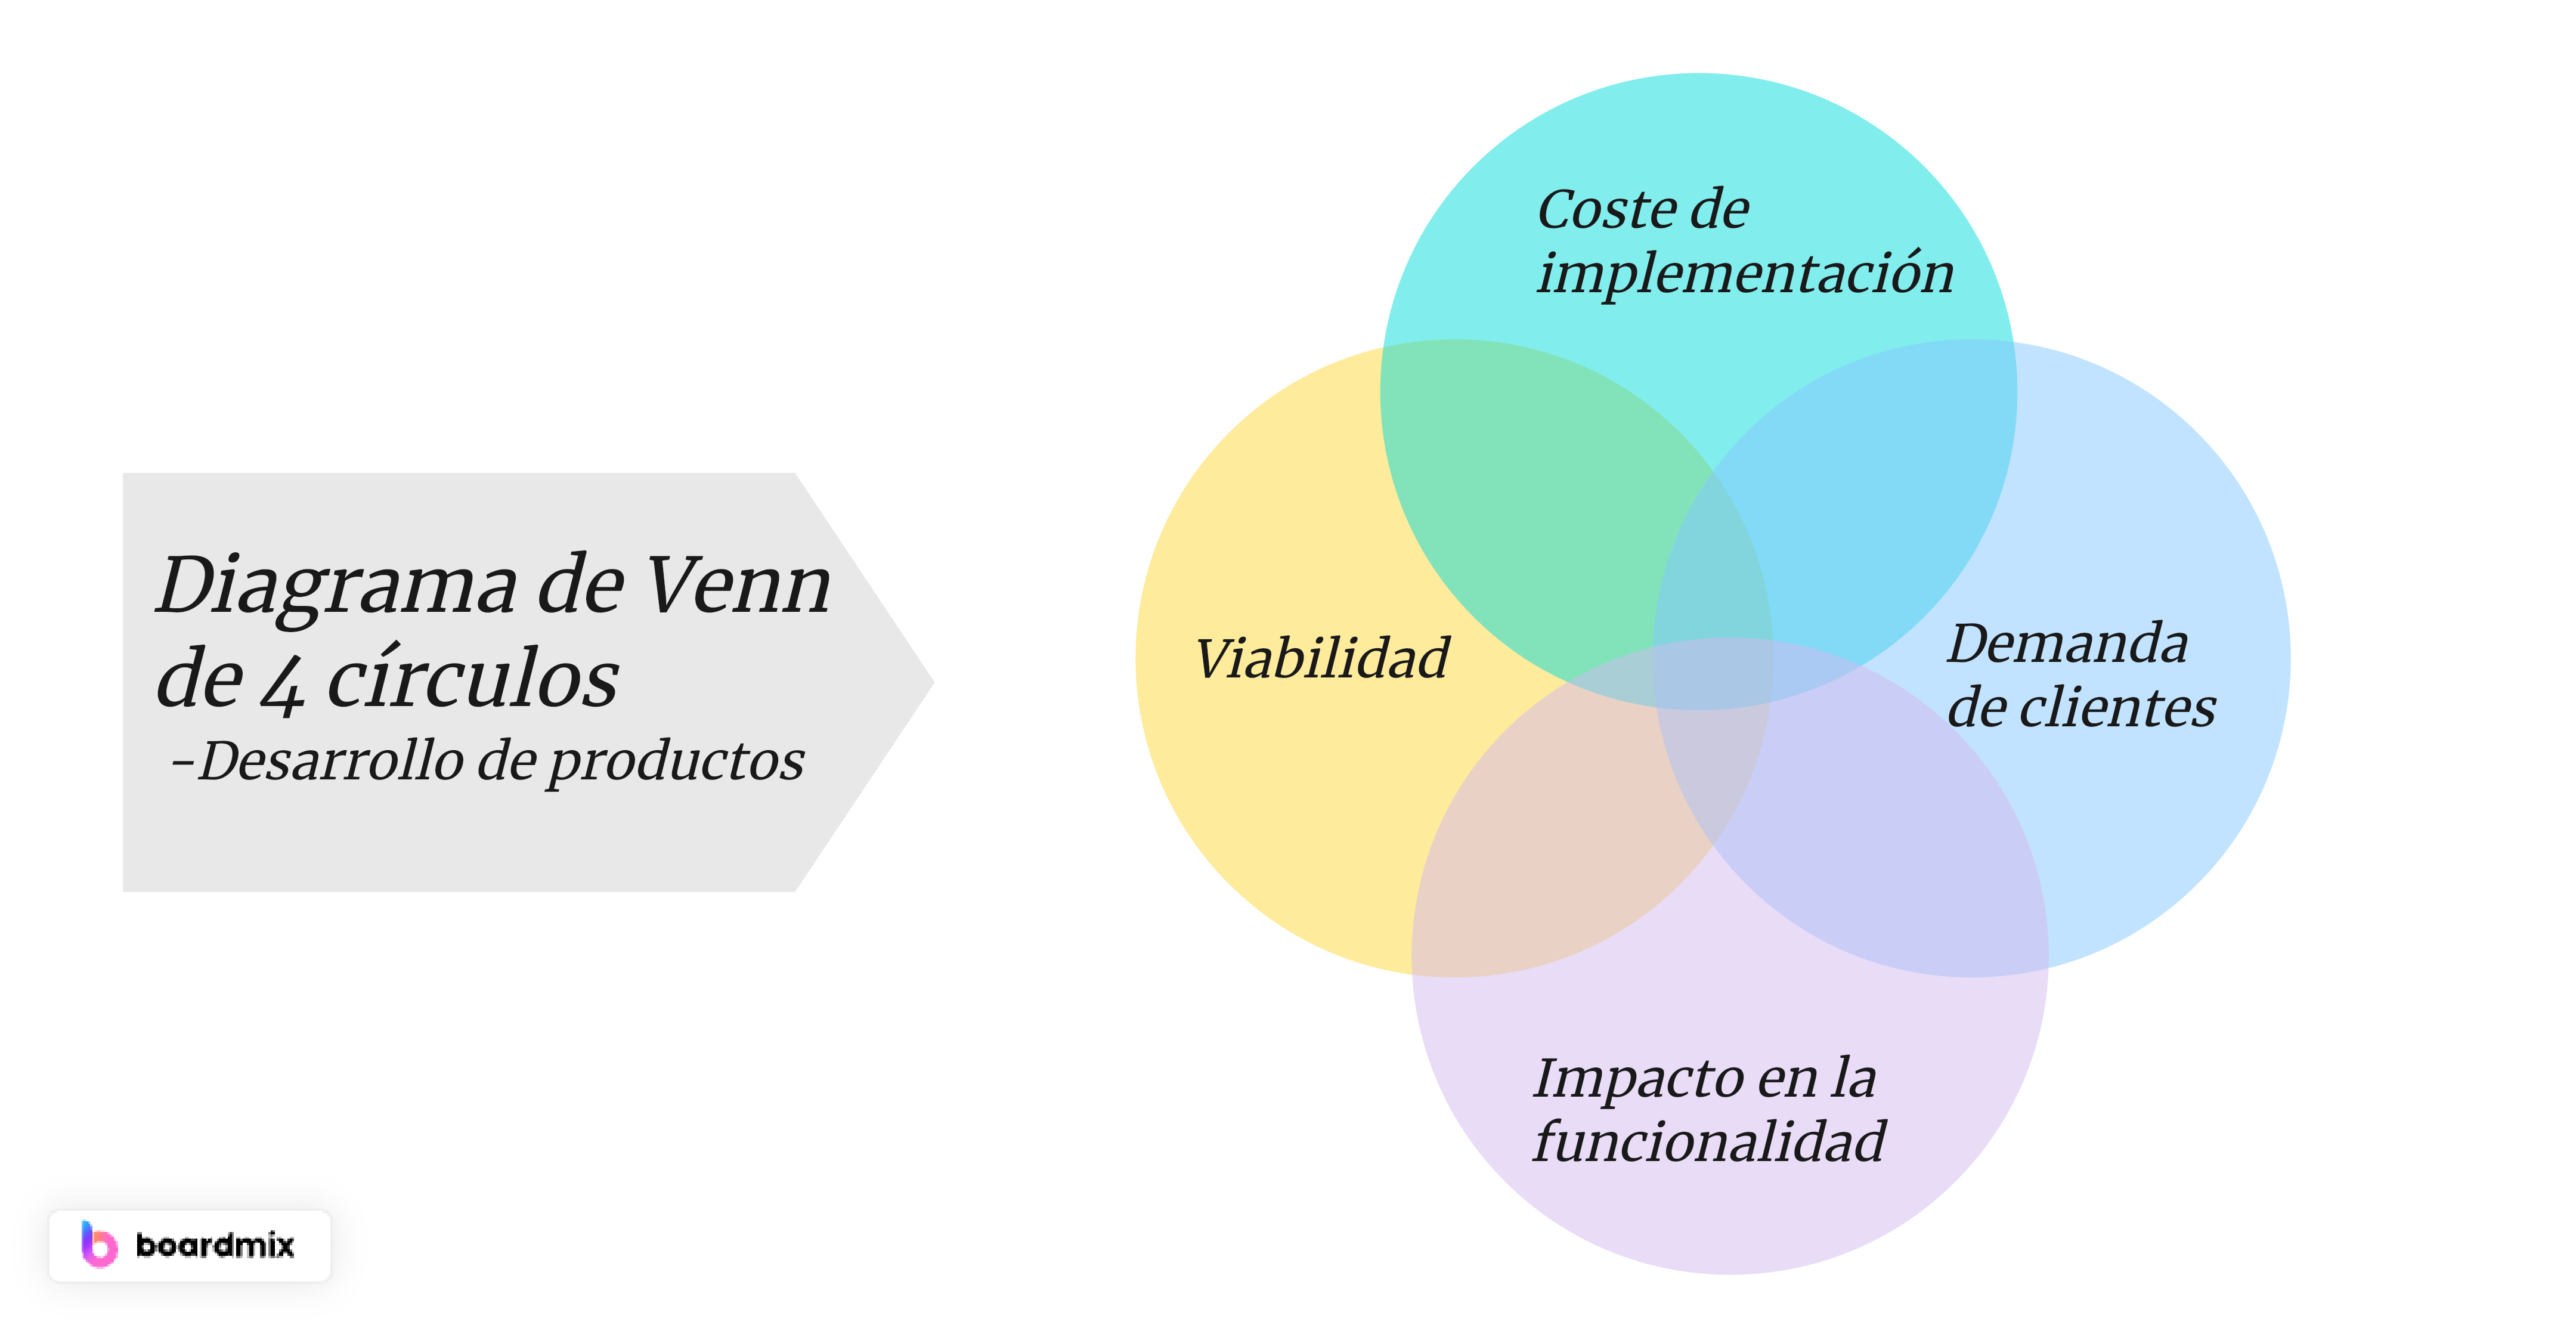 Diagrama de Venn de 4 círculos en el desarrollo de productos